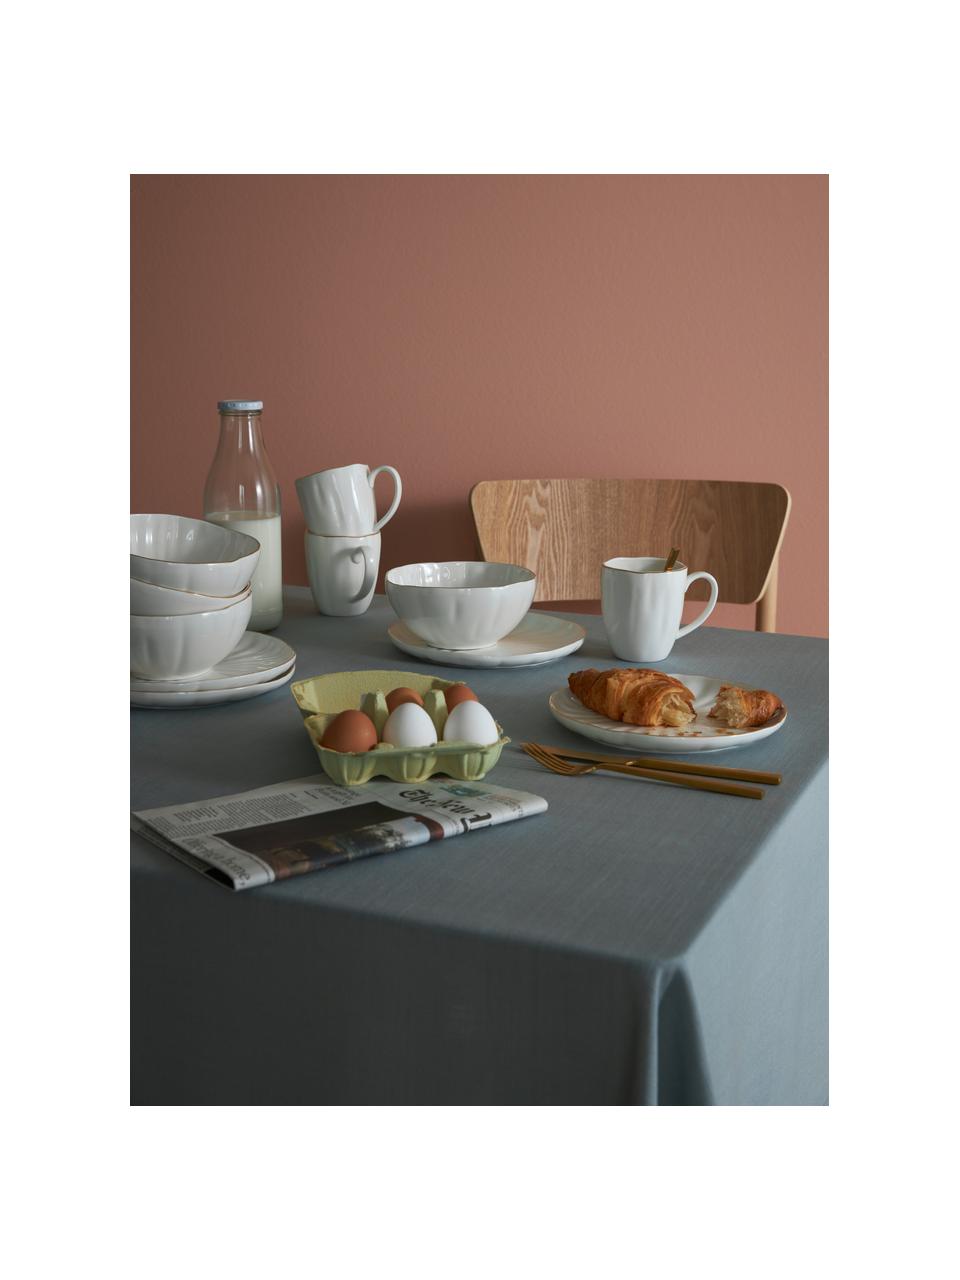 Frühstücksteller Sali mit Relief, 2 Stück, Porzellan, Weiß mit Goldrand, Ø 22 cm